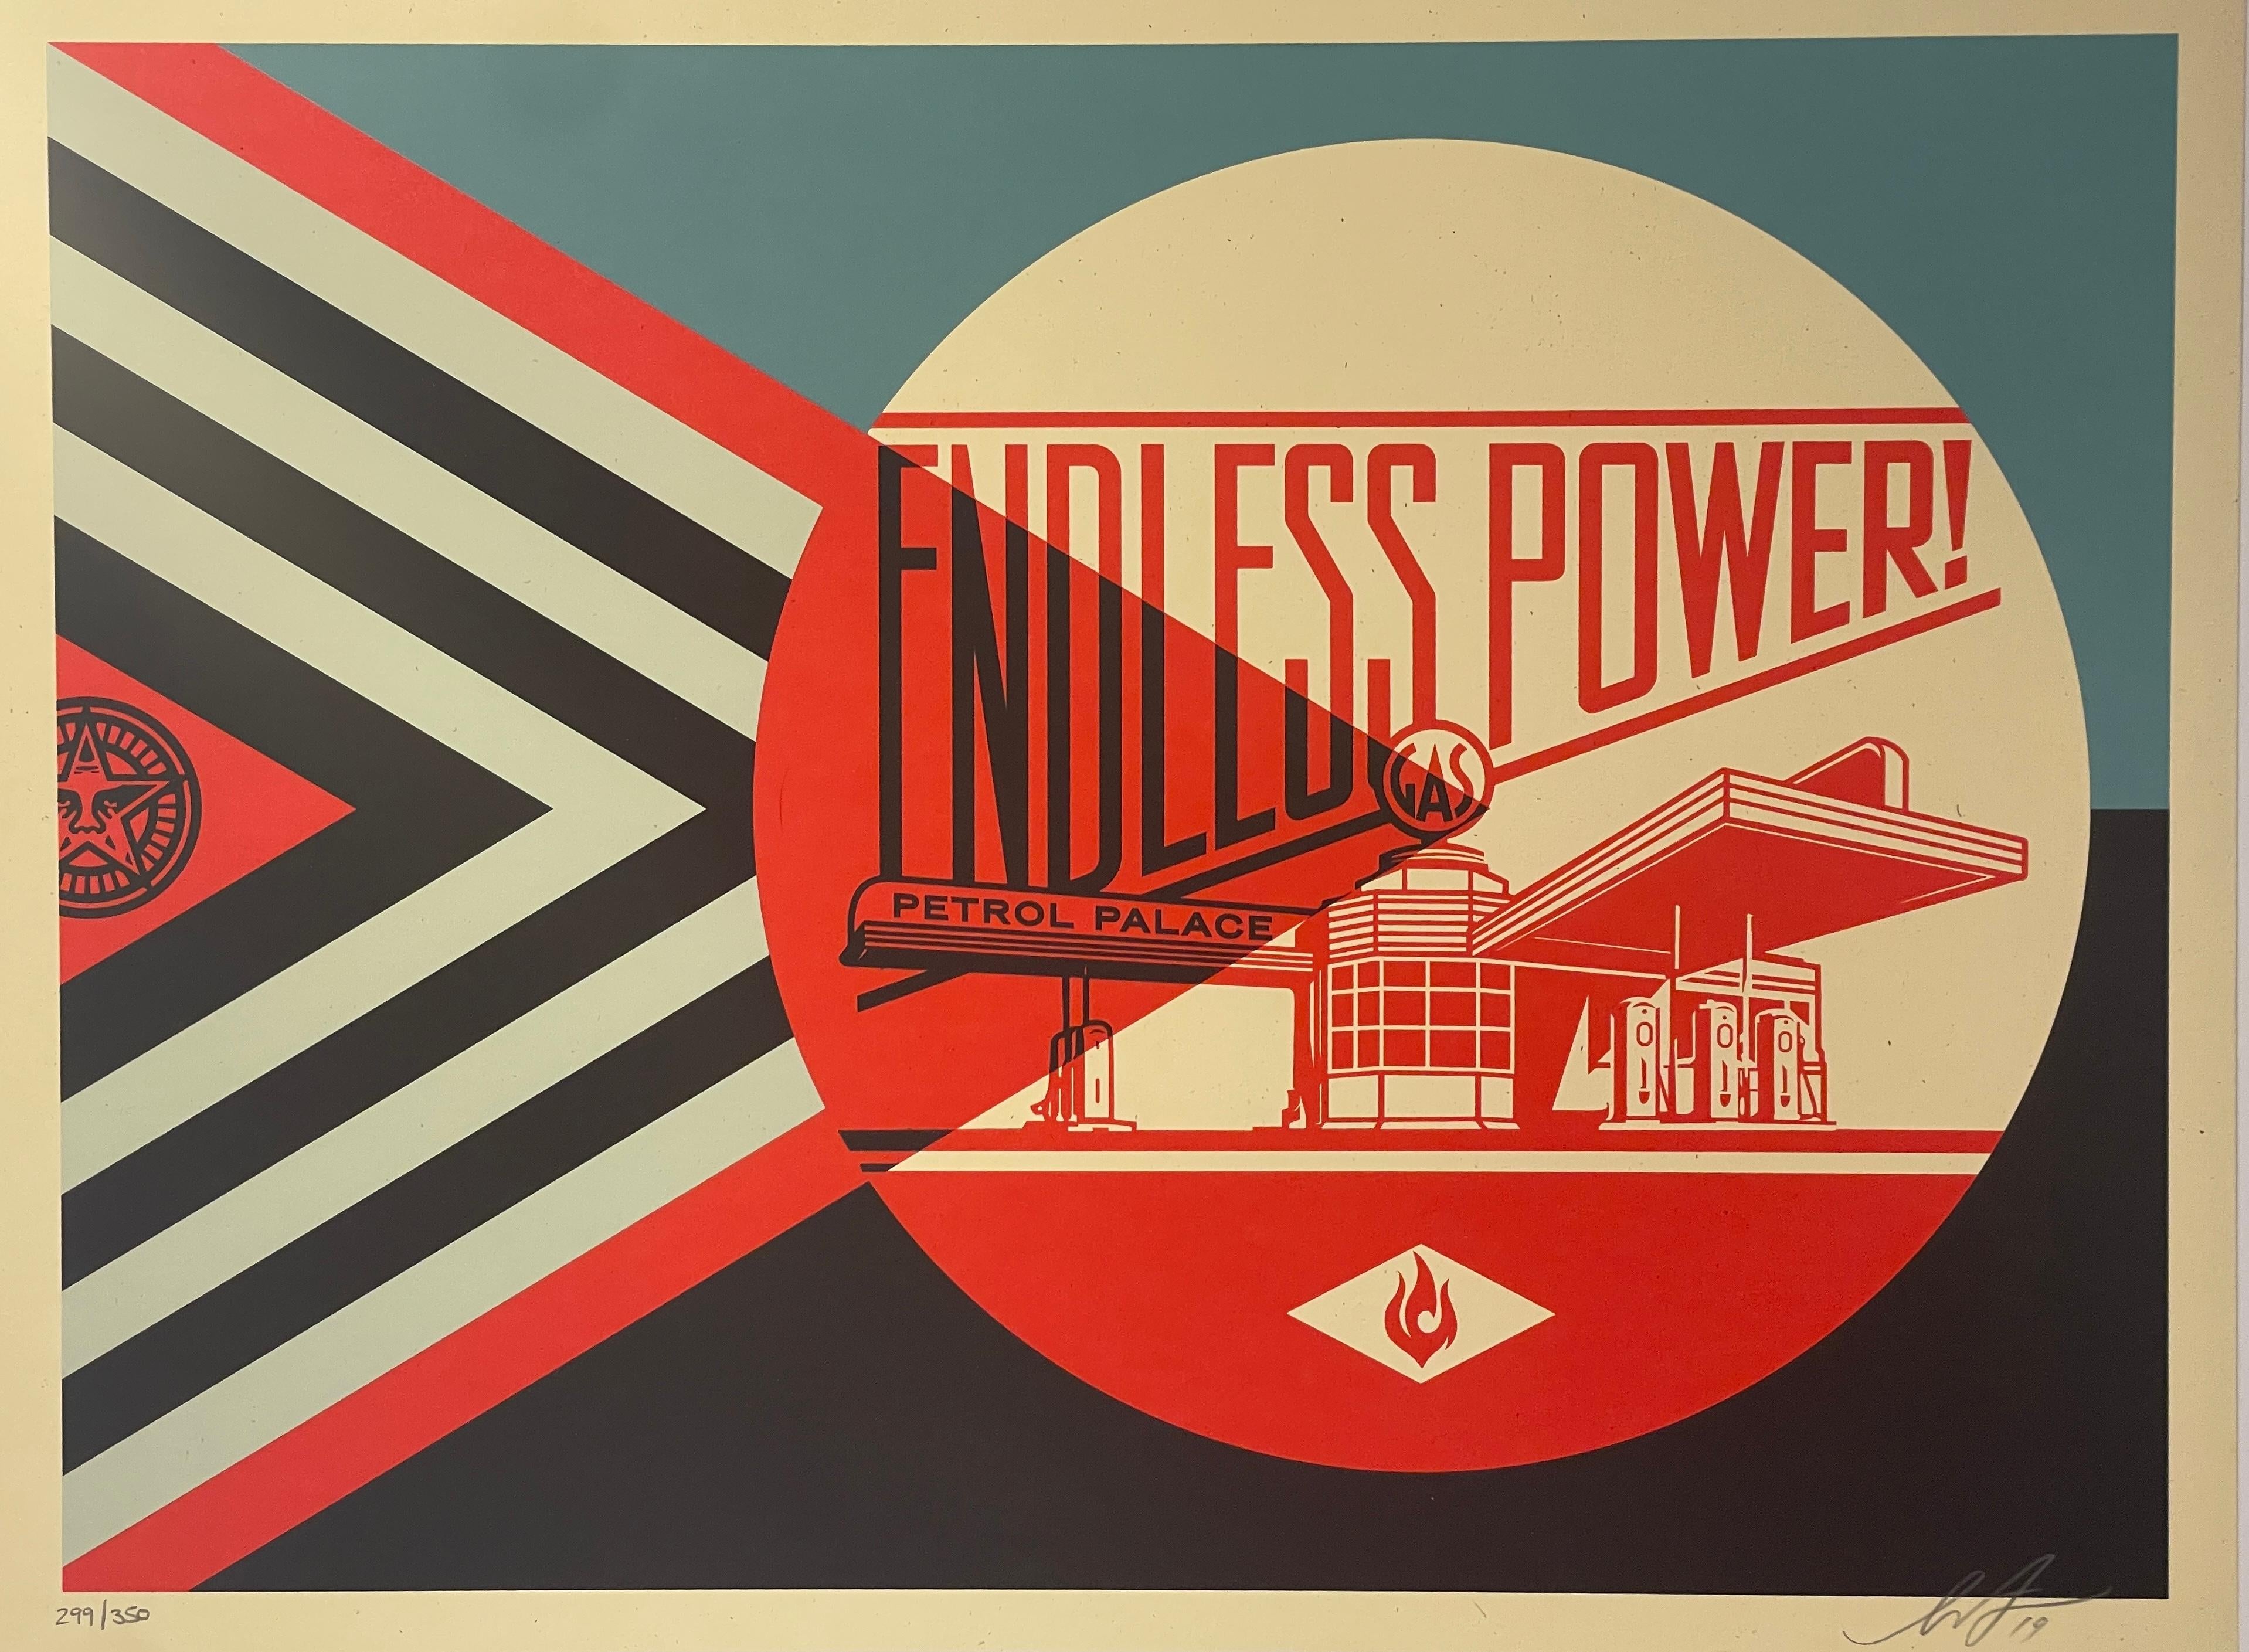 "Das Plakat 'Endless Power Petrol Palace' ist sowohl eine Feier als auch eine Kritik an der verführerischen grafischen Propaganda der Erdölindustrie. Ich habe diesen Druck so gestaltet, dass er sich wie eine alte Anzeige anfühlt, die den Reichtum